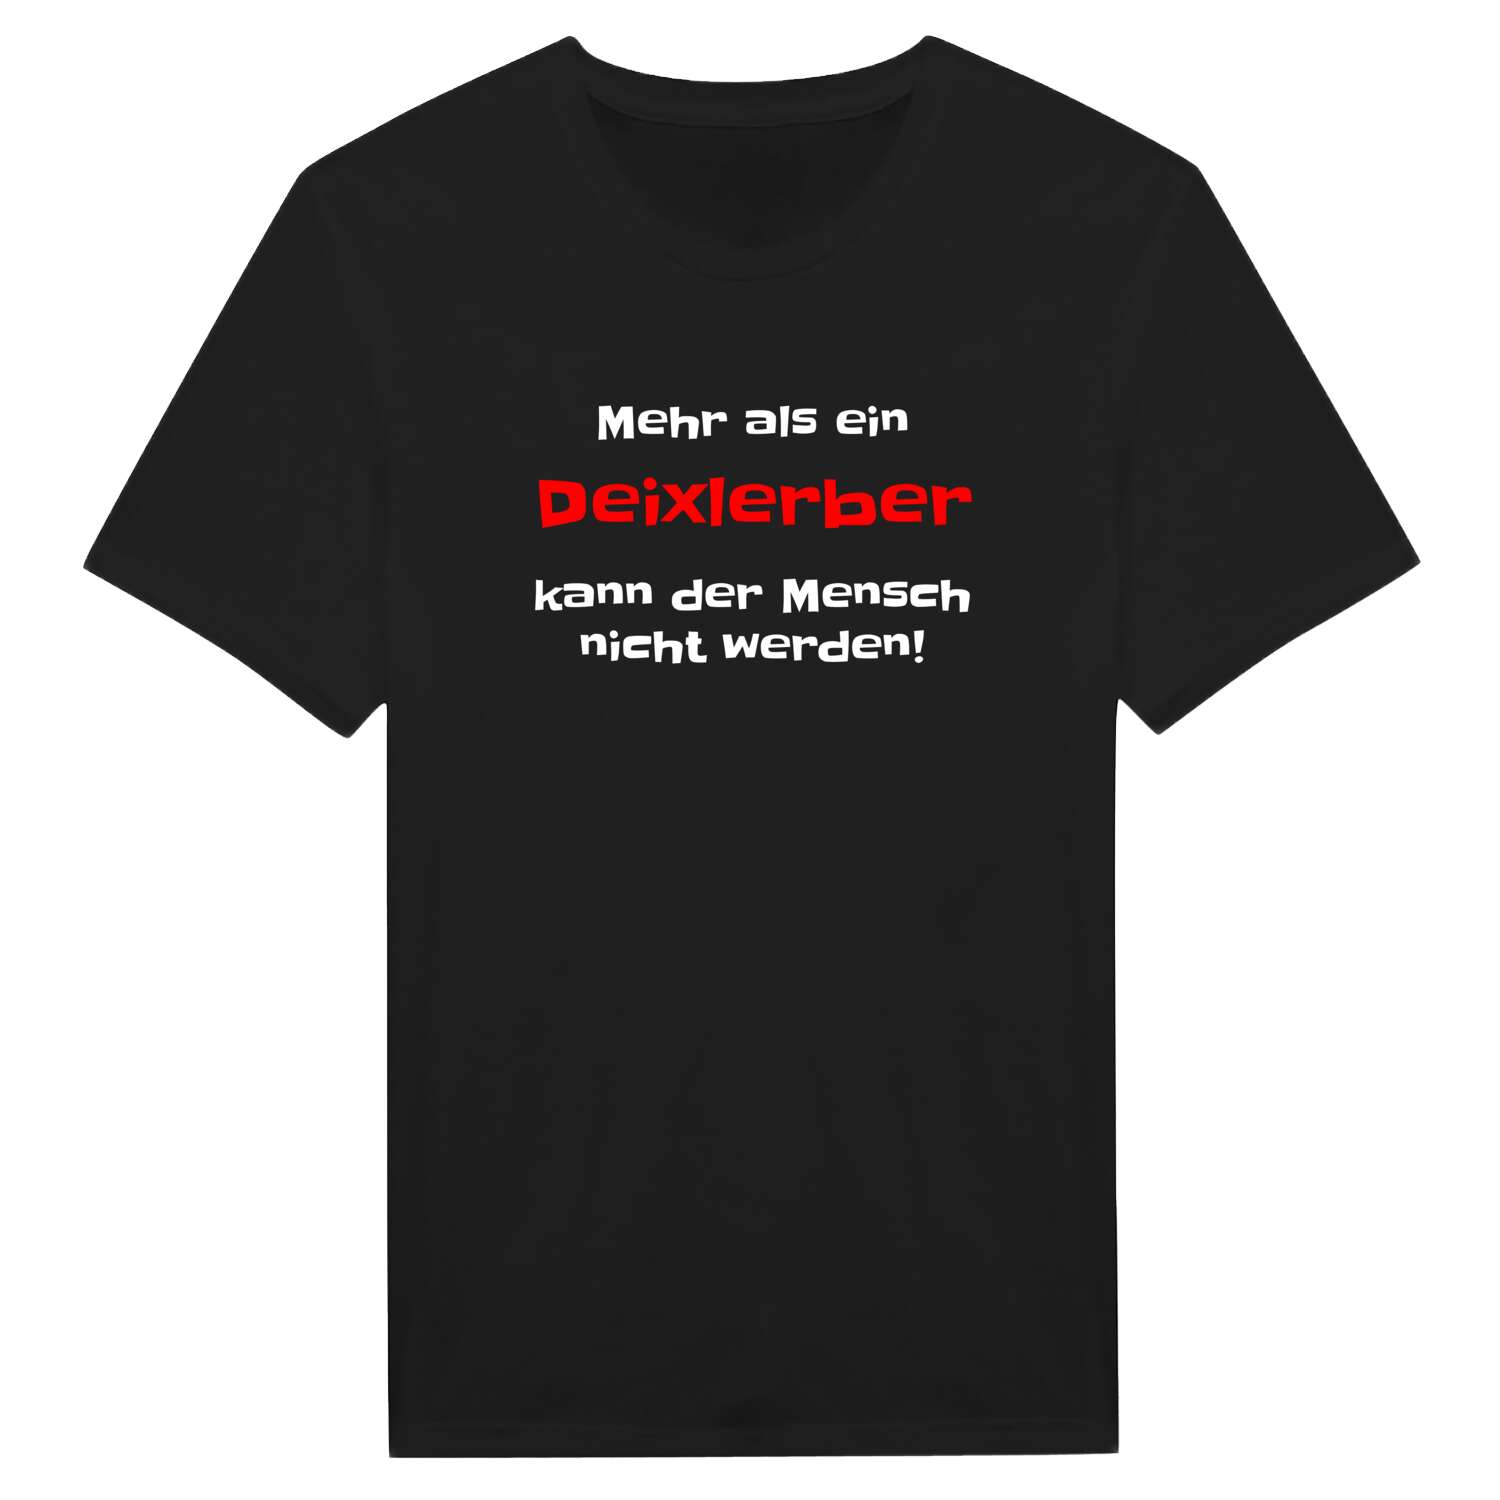 Deixlerb T-Shirt »Mehr als ein«